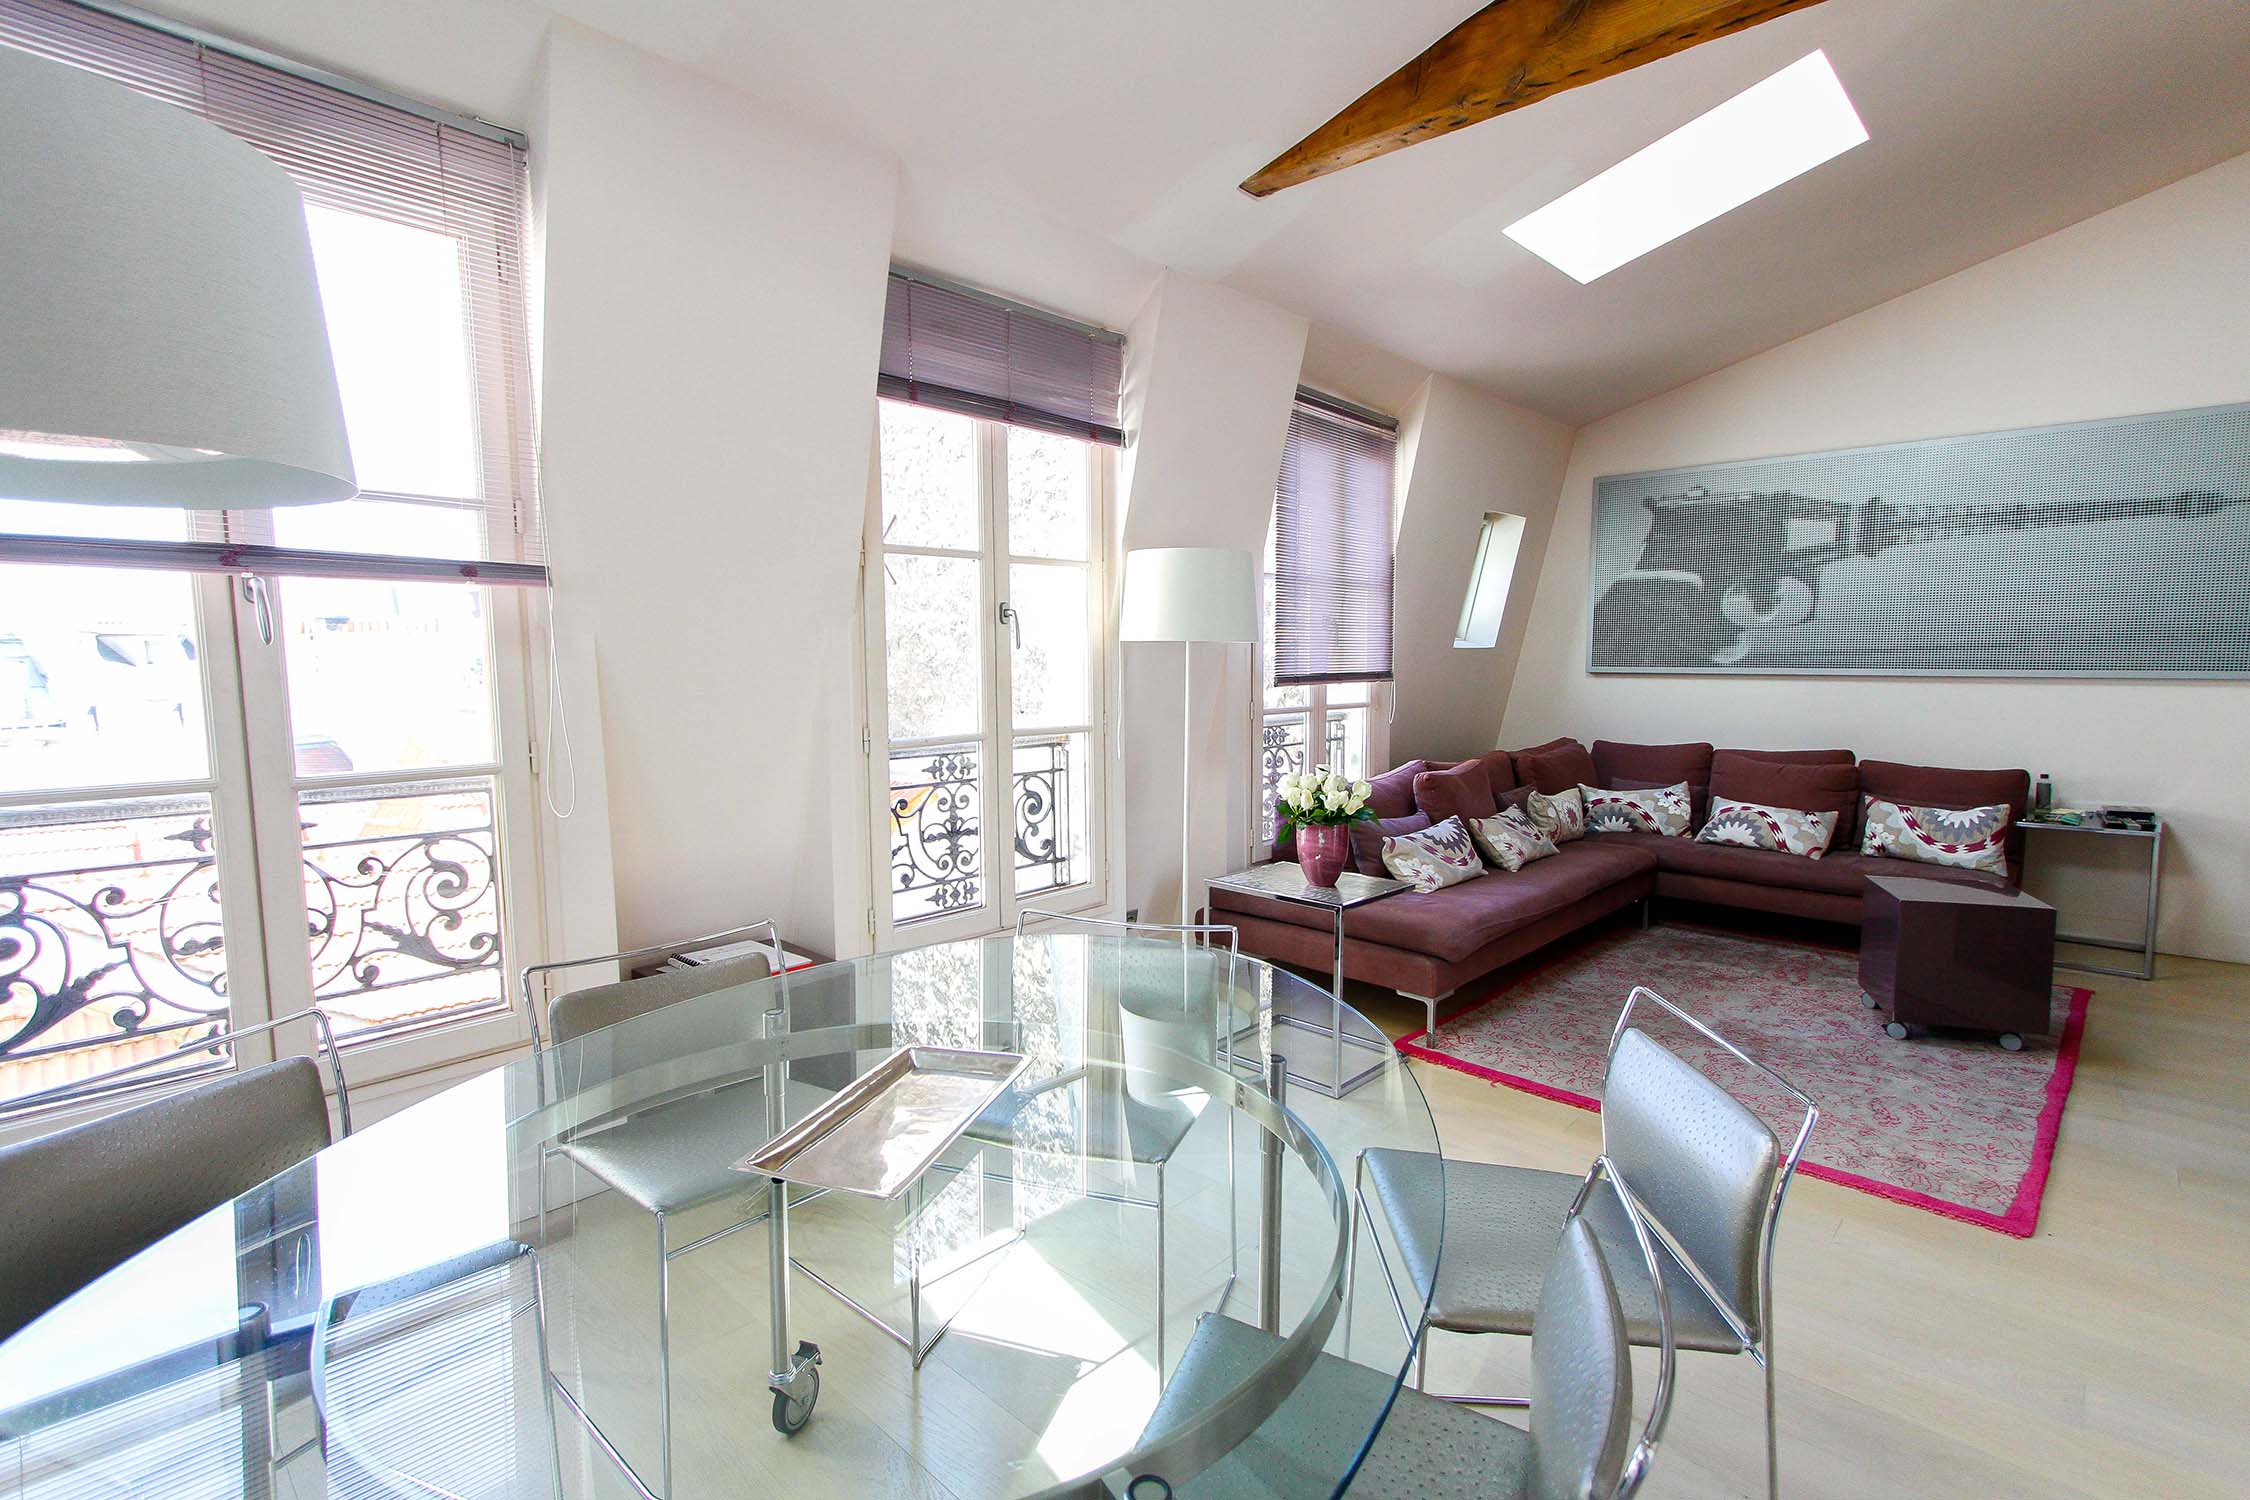 vente appartement duplex dernier étage Paris 6ème 75006 Saint Germain terrasse Rooftop Vue dégagée luxe parisien